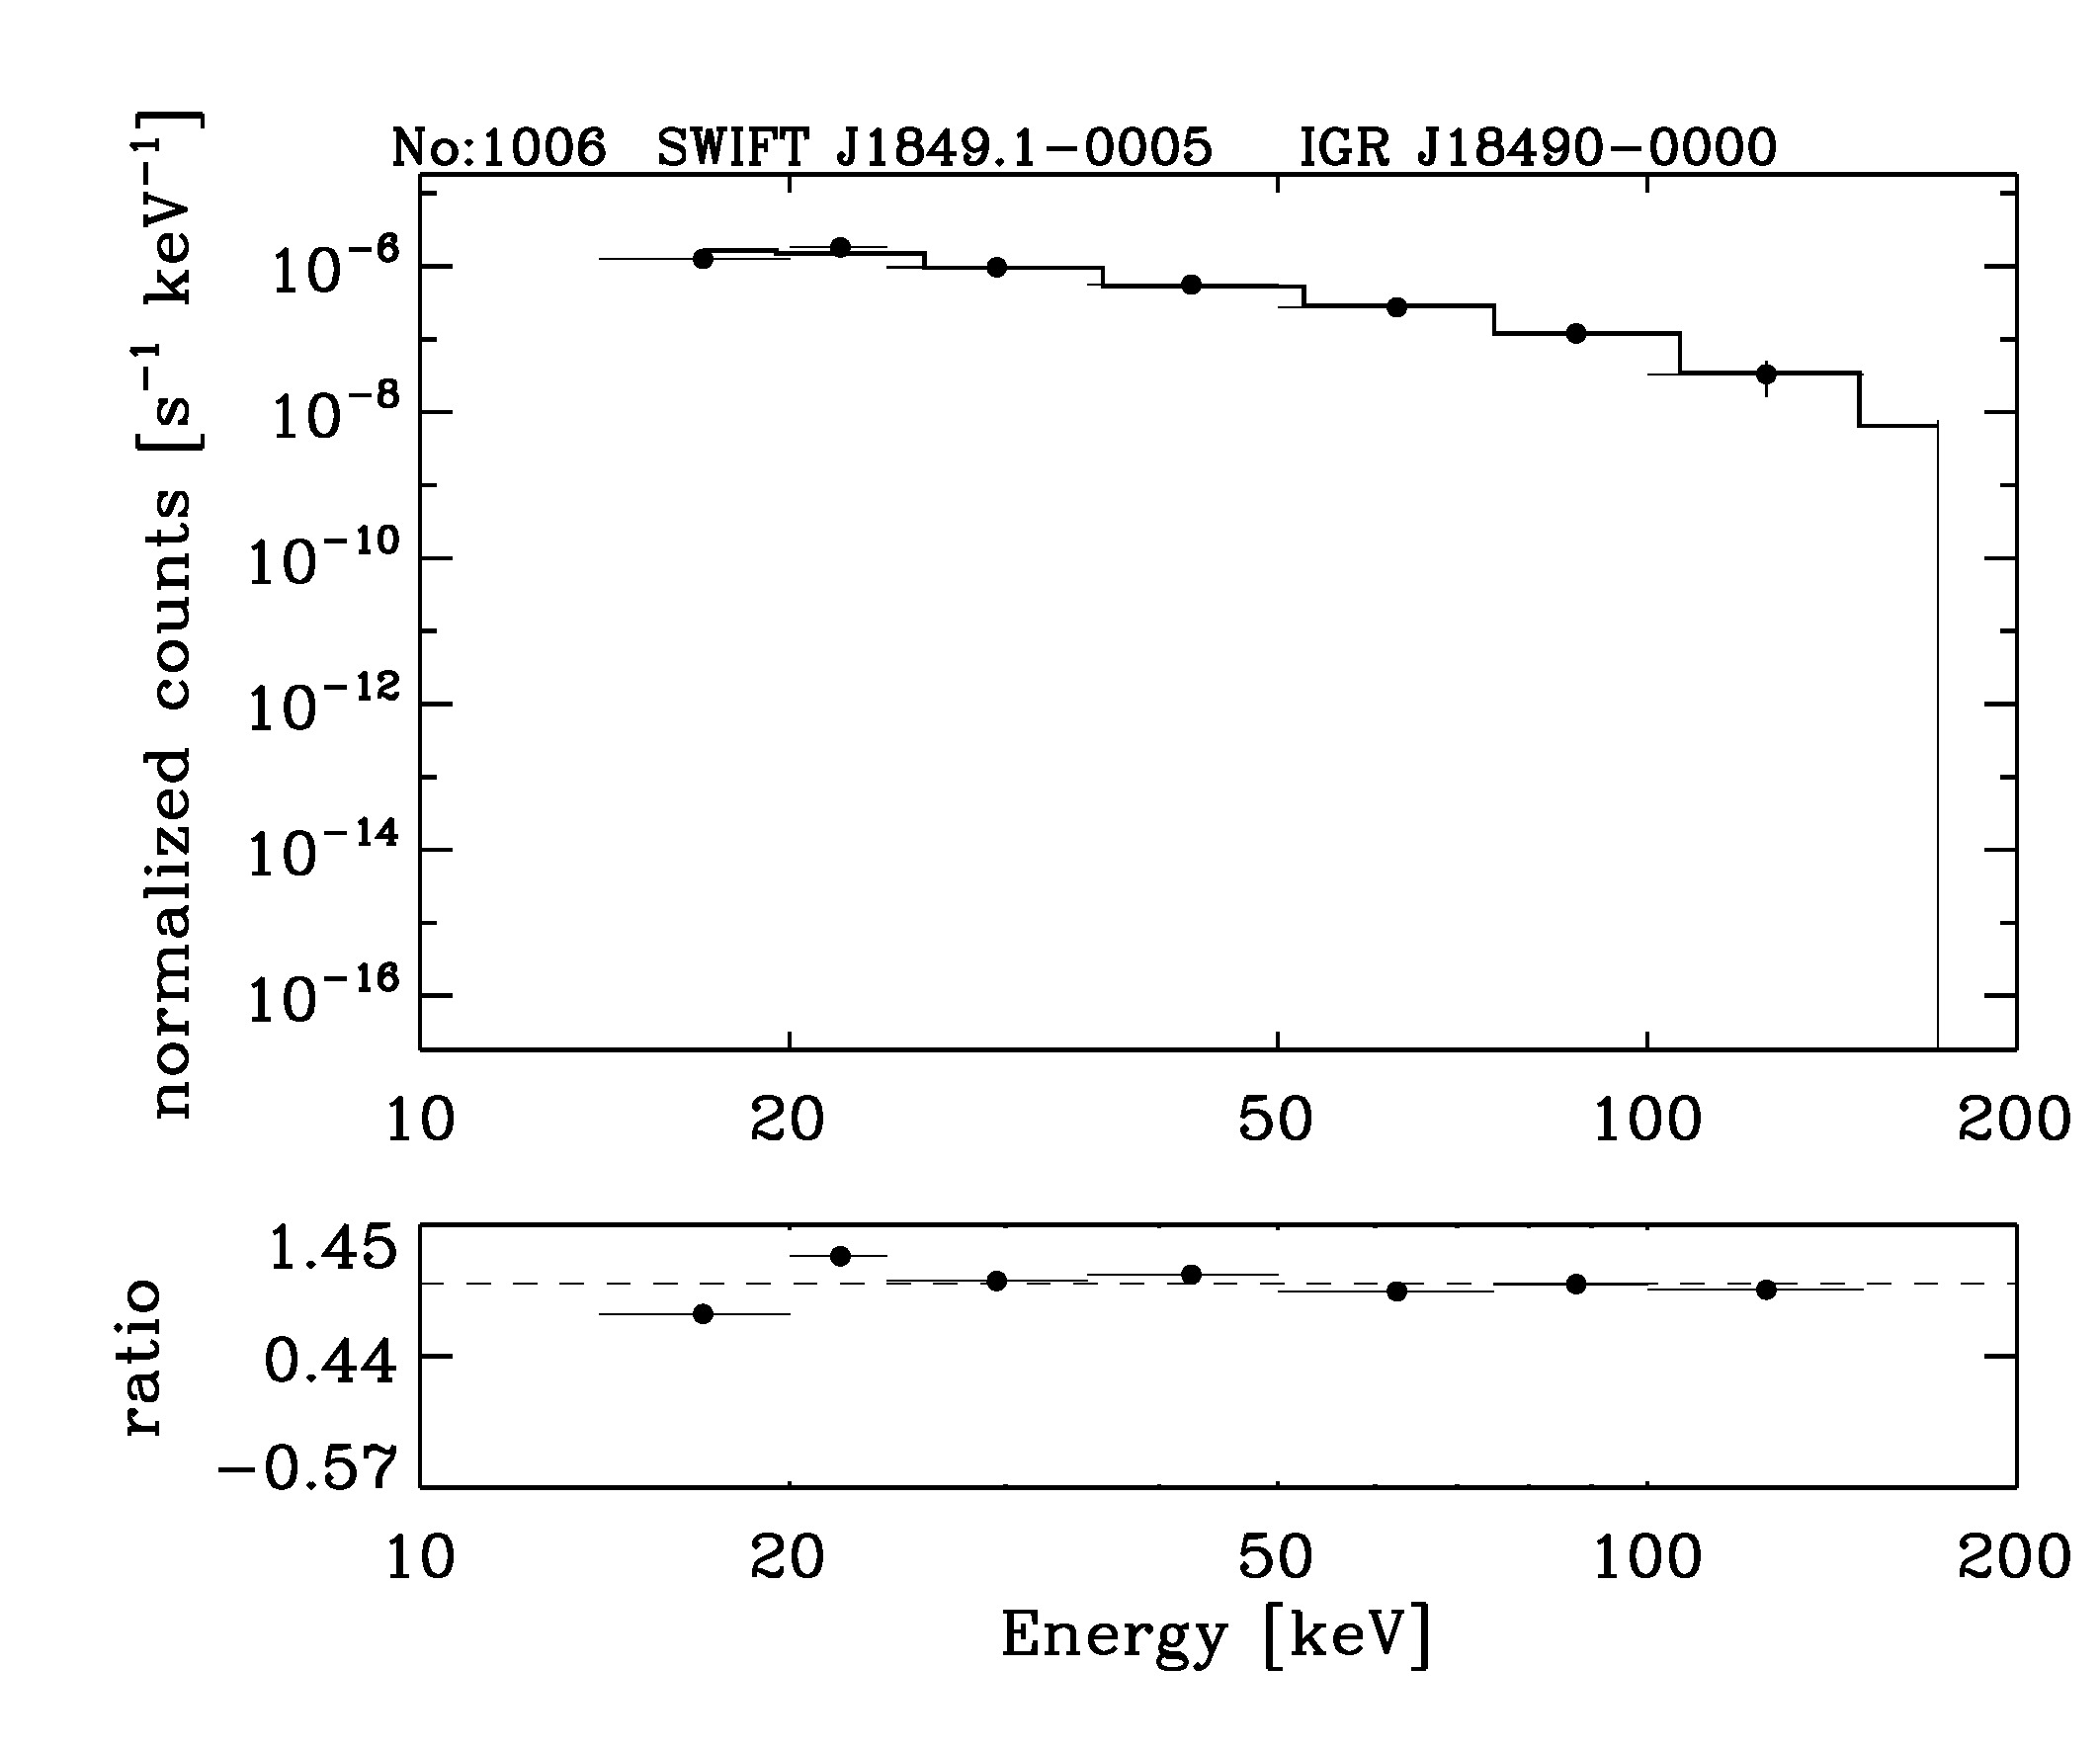 BAT Spectrum for SWIFT J1849.1-0005